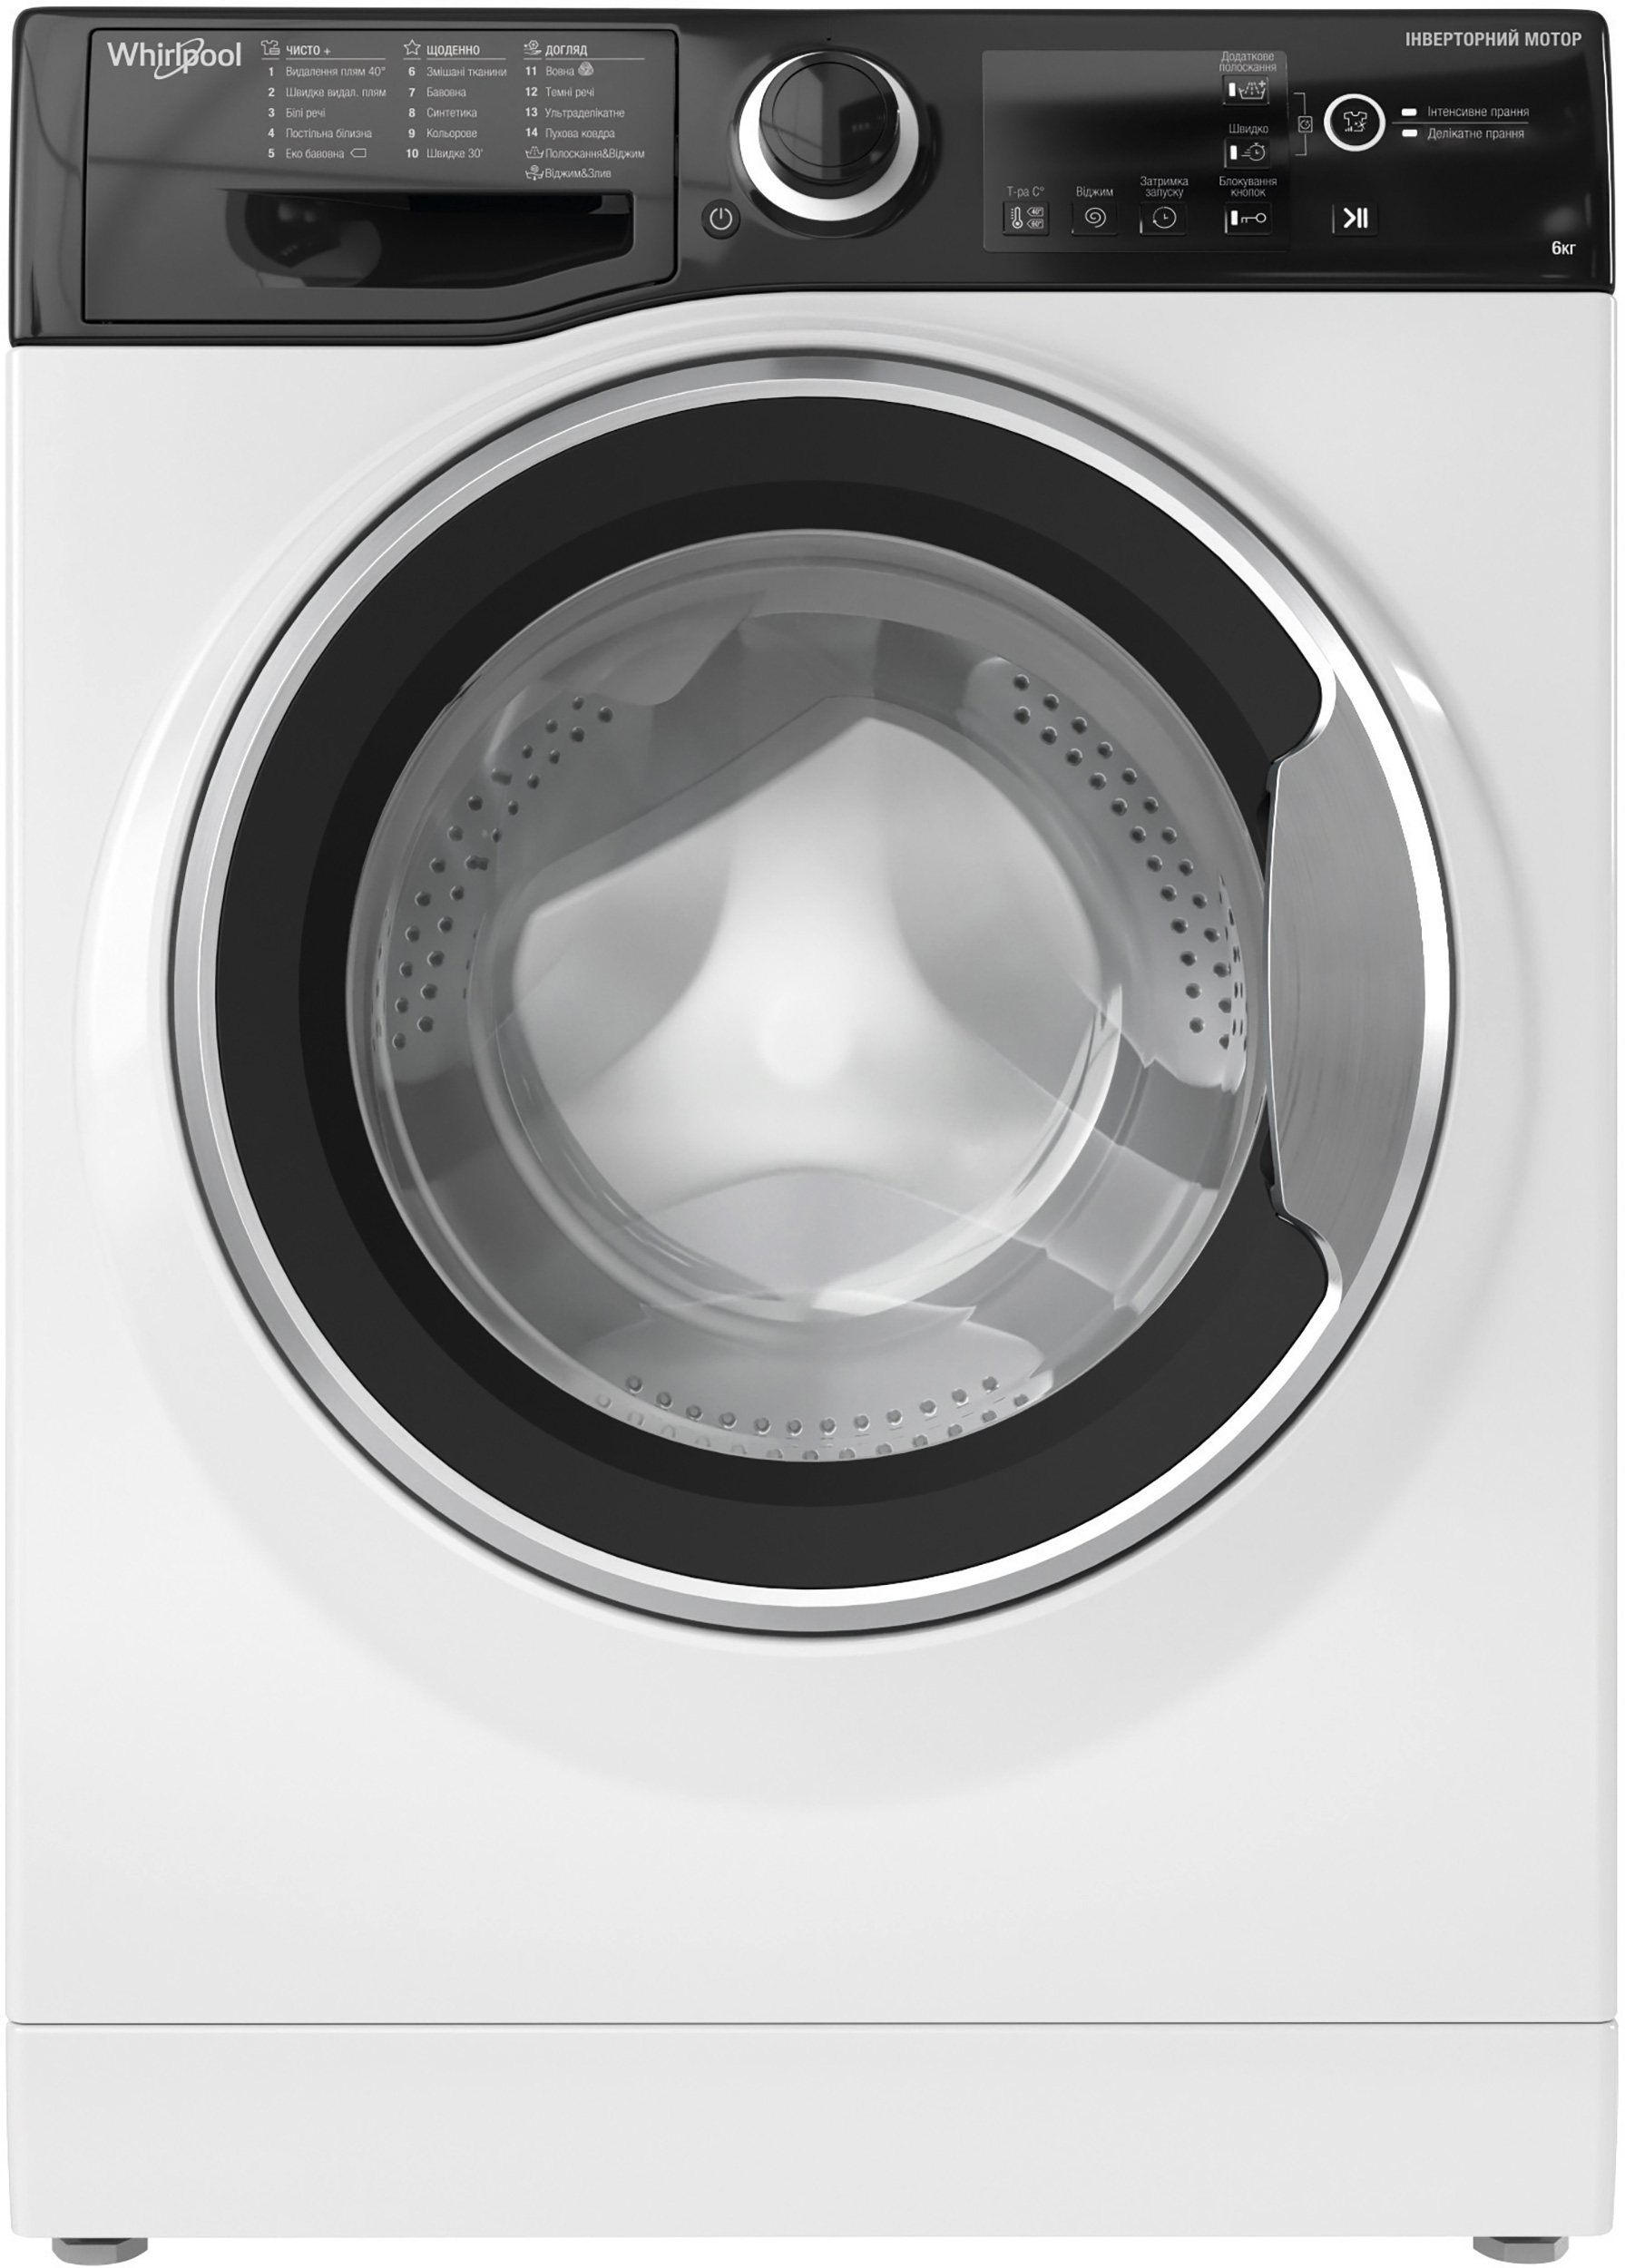 Как разобрать стиральную машину Вирпул?